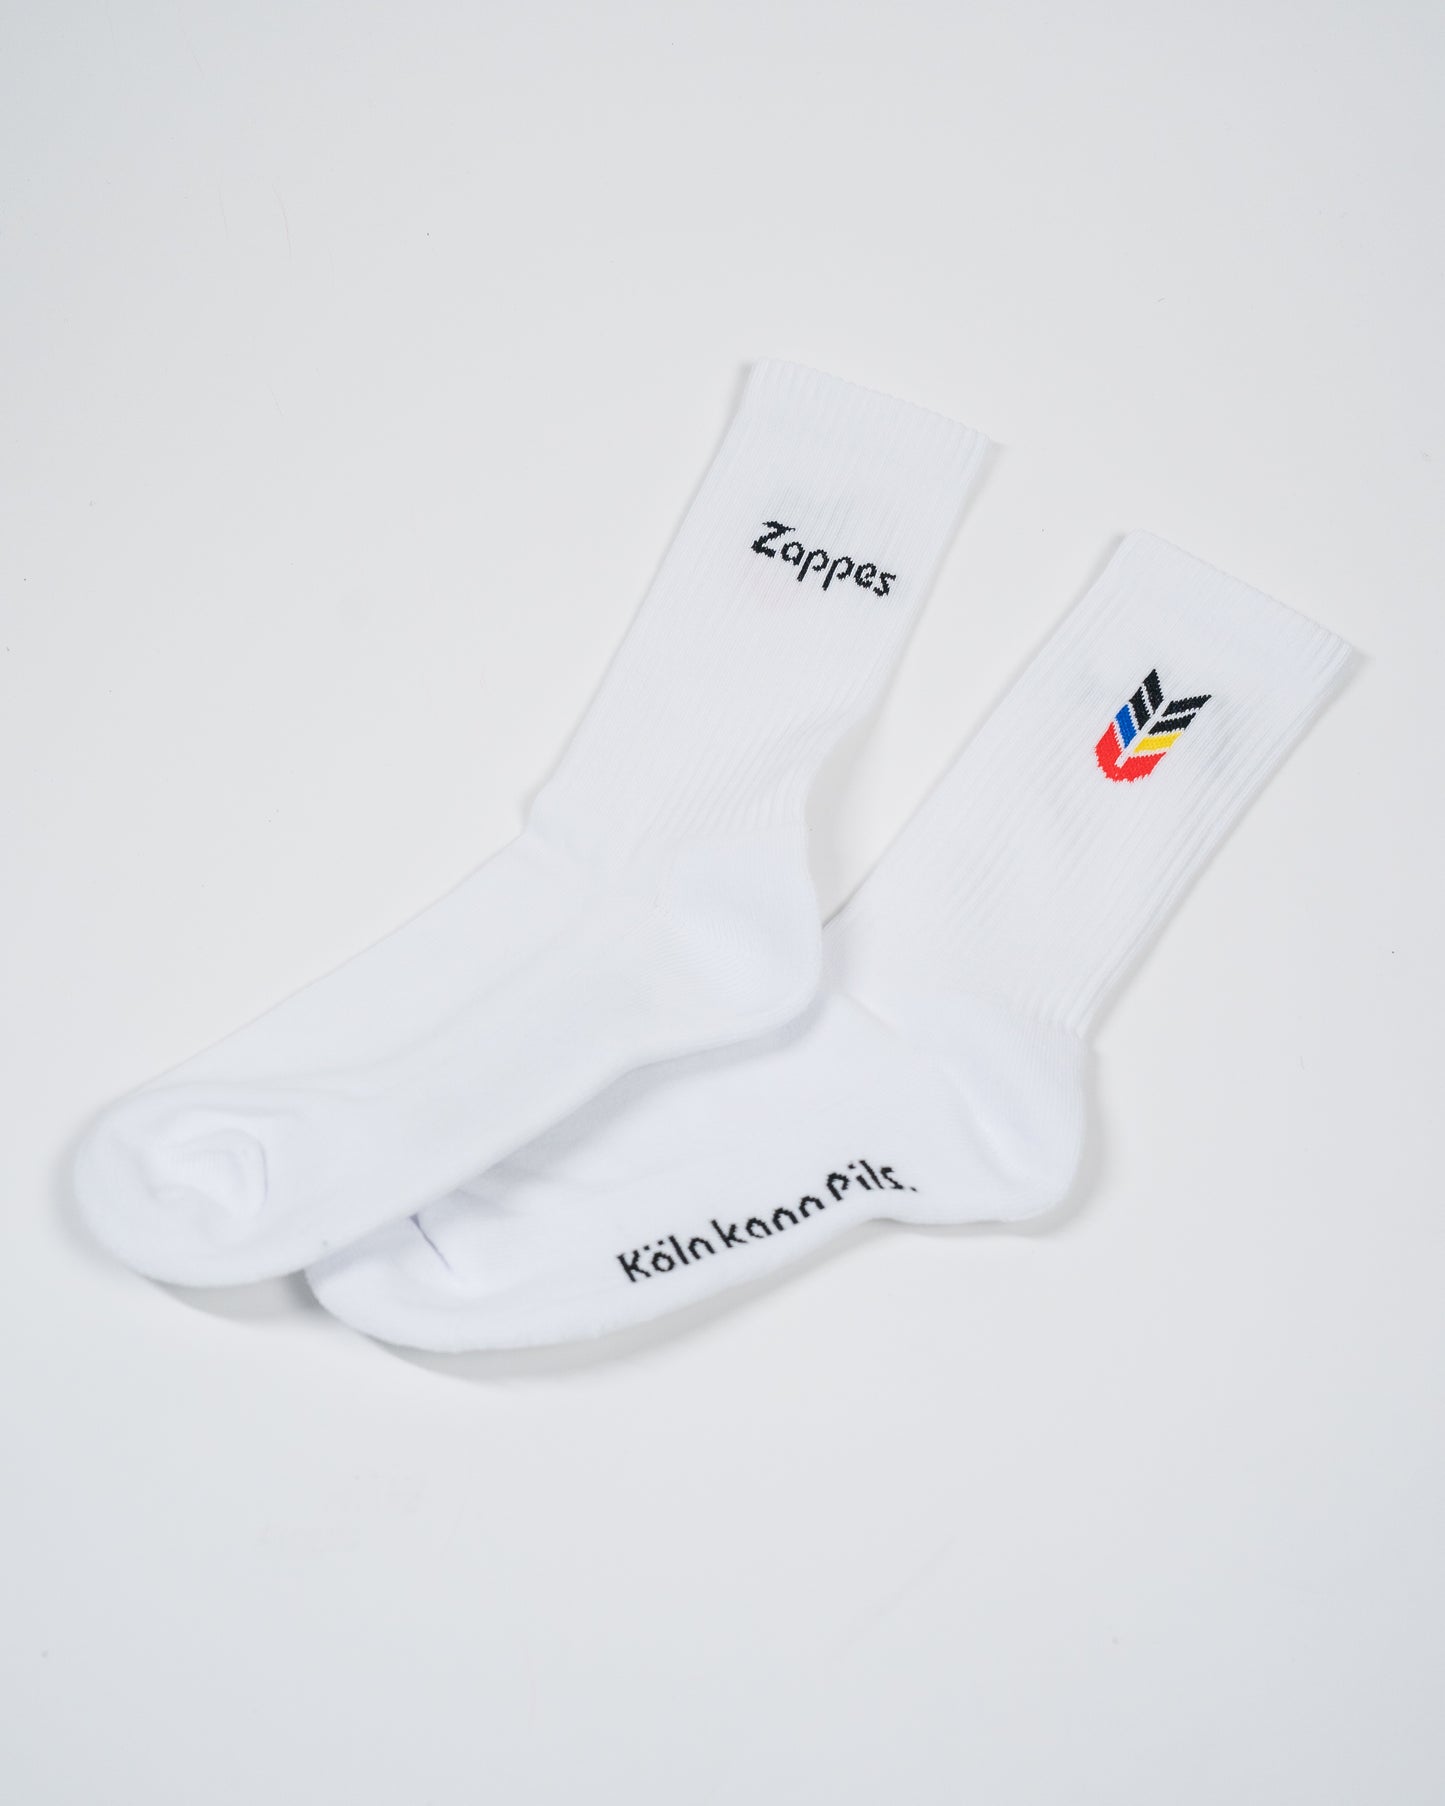 Socken "Zappes" | Unisex weiß